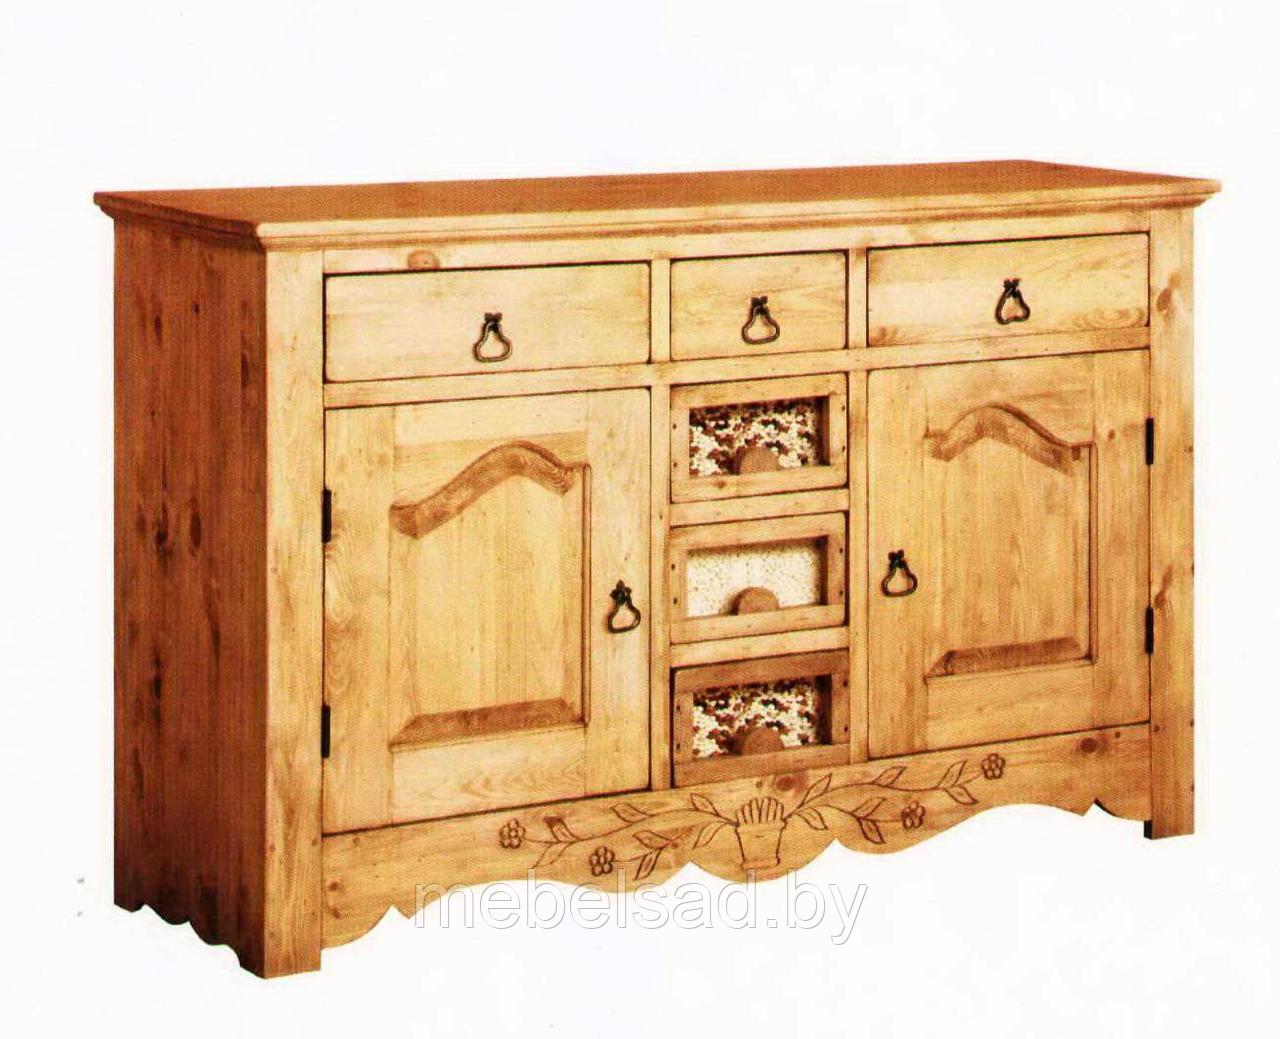 Буфет кухонный деревянный "Дачный Люкс №4" Д1500мм*В960мм*Ш480мм